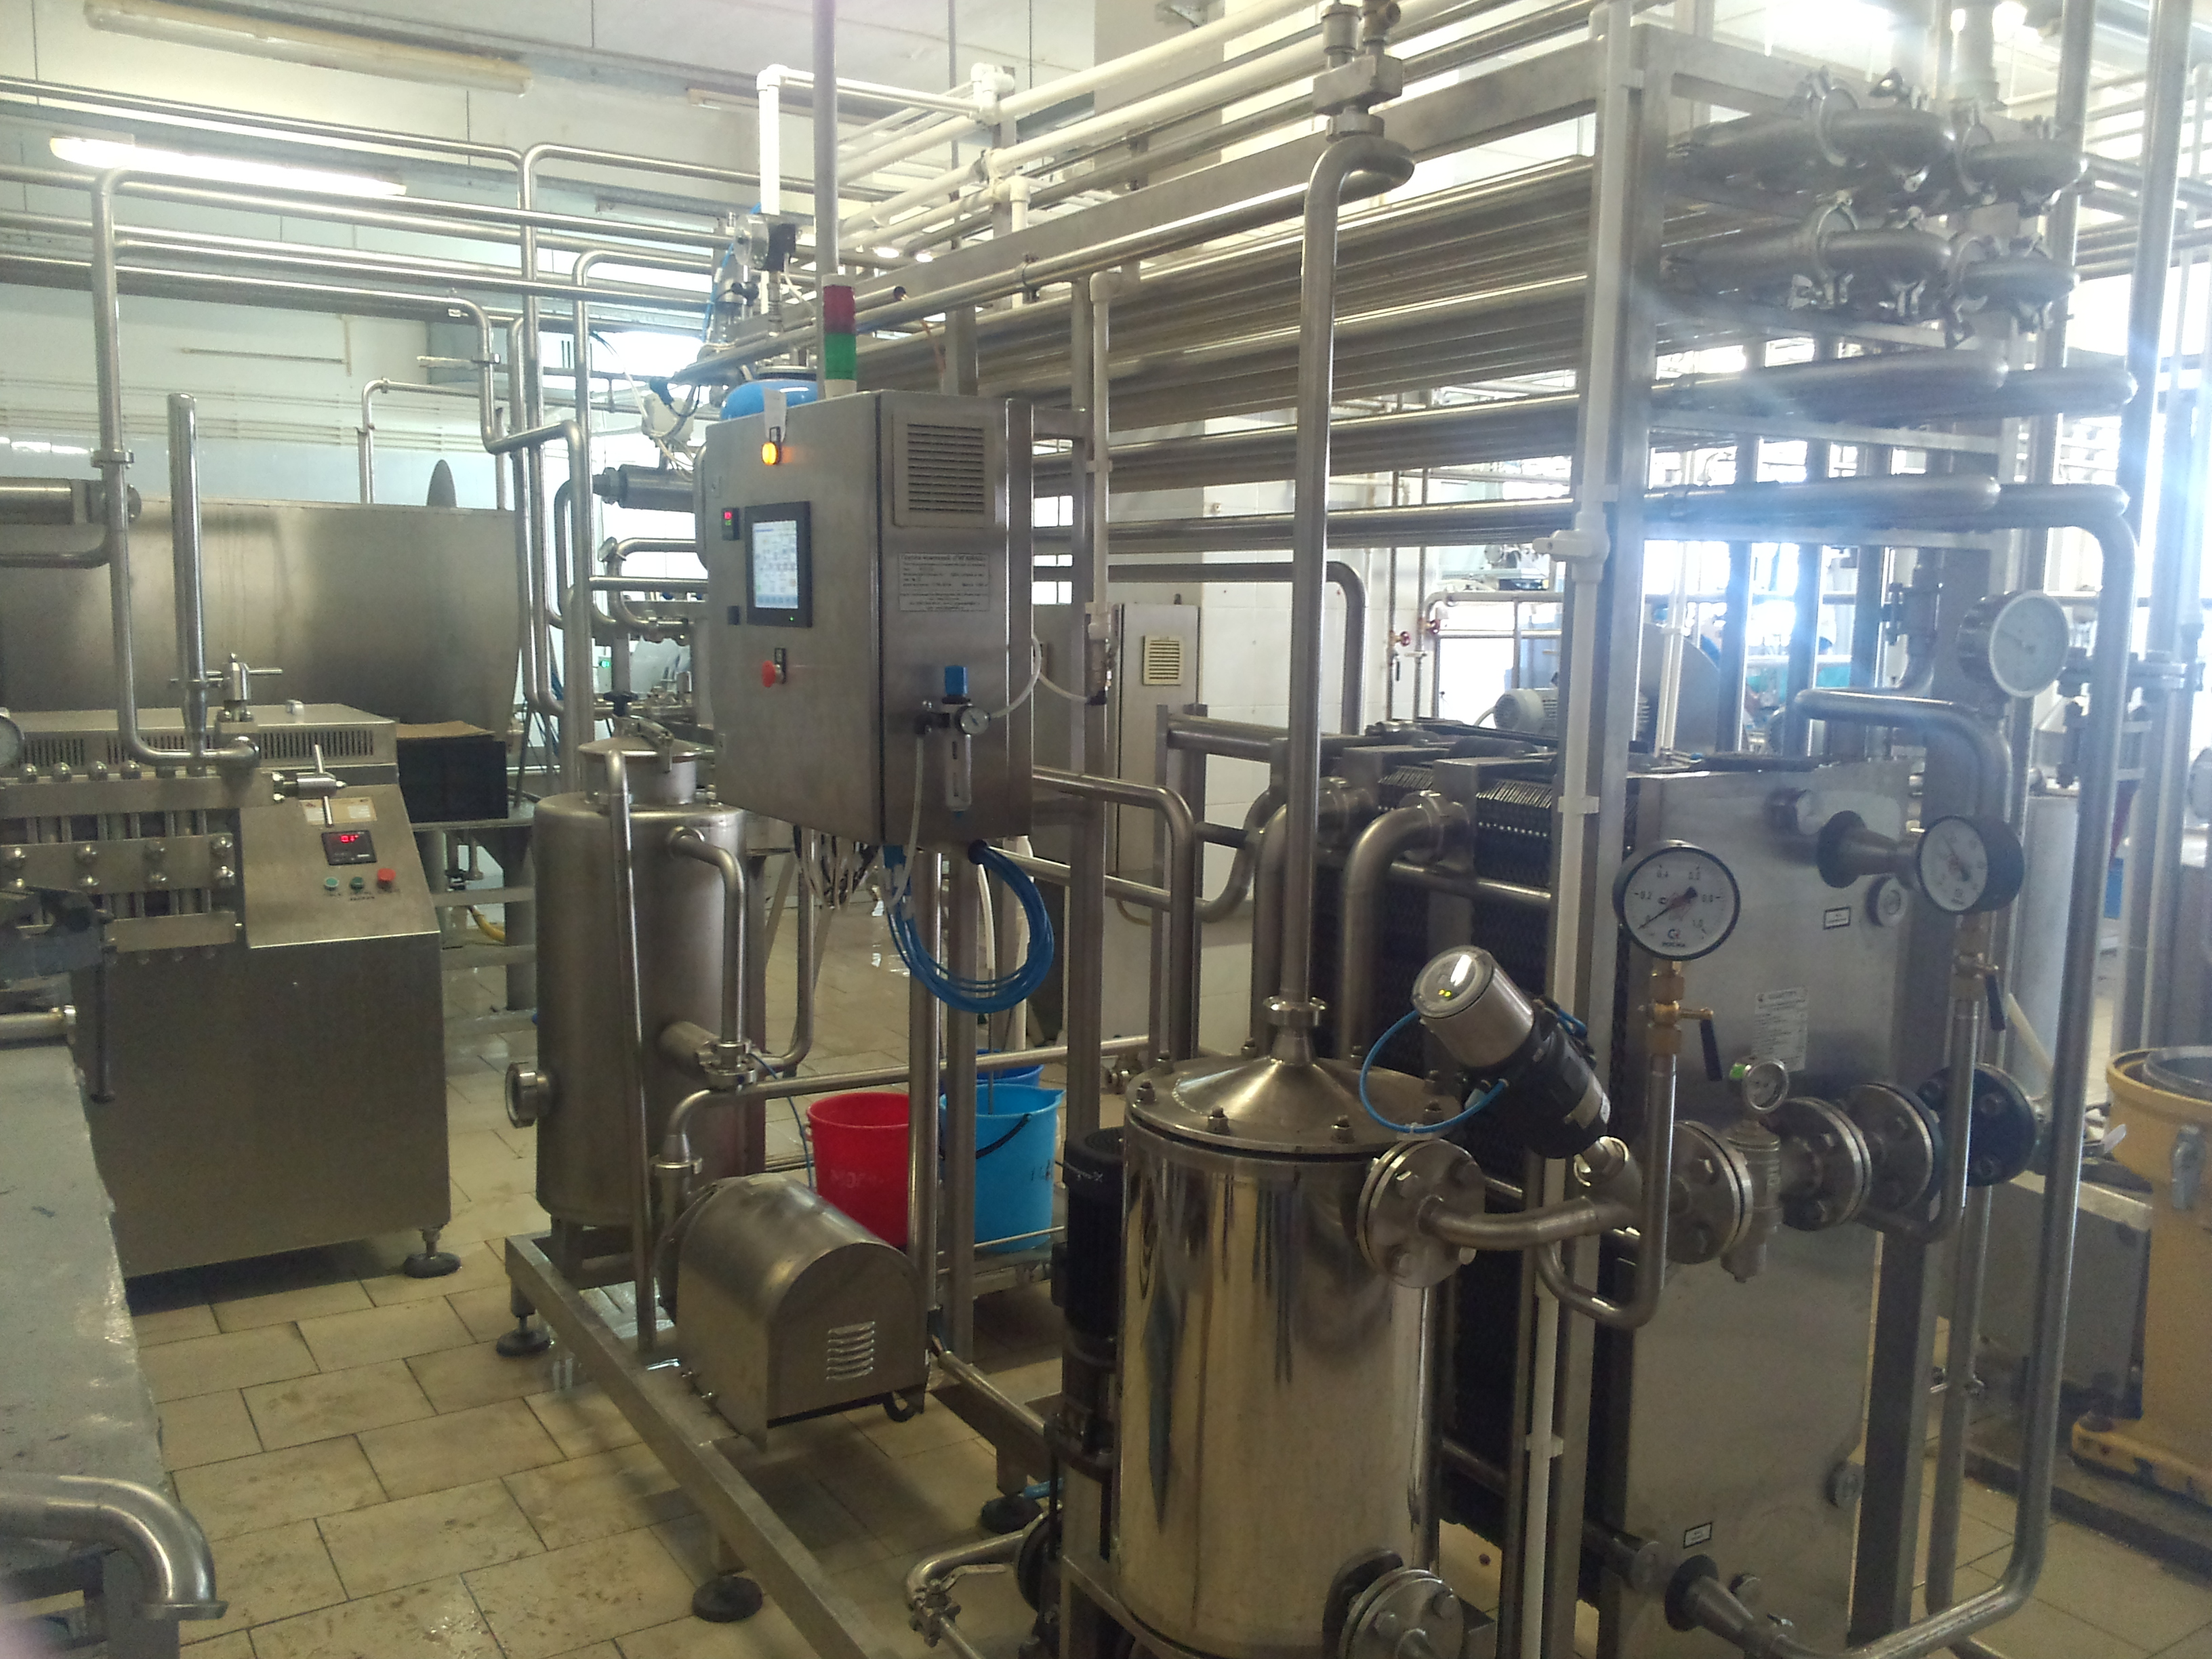  Молочный завод, выработка до 15 тонн молока в сутки